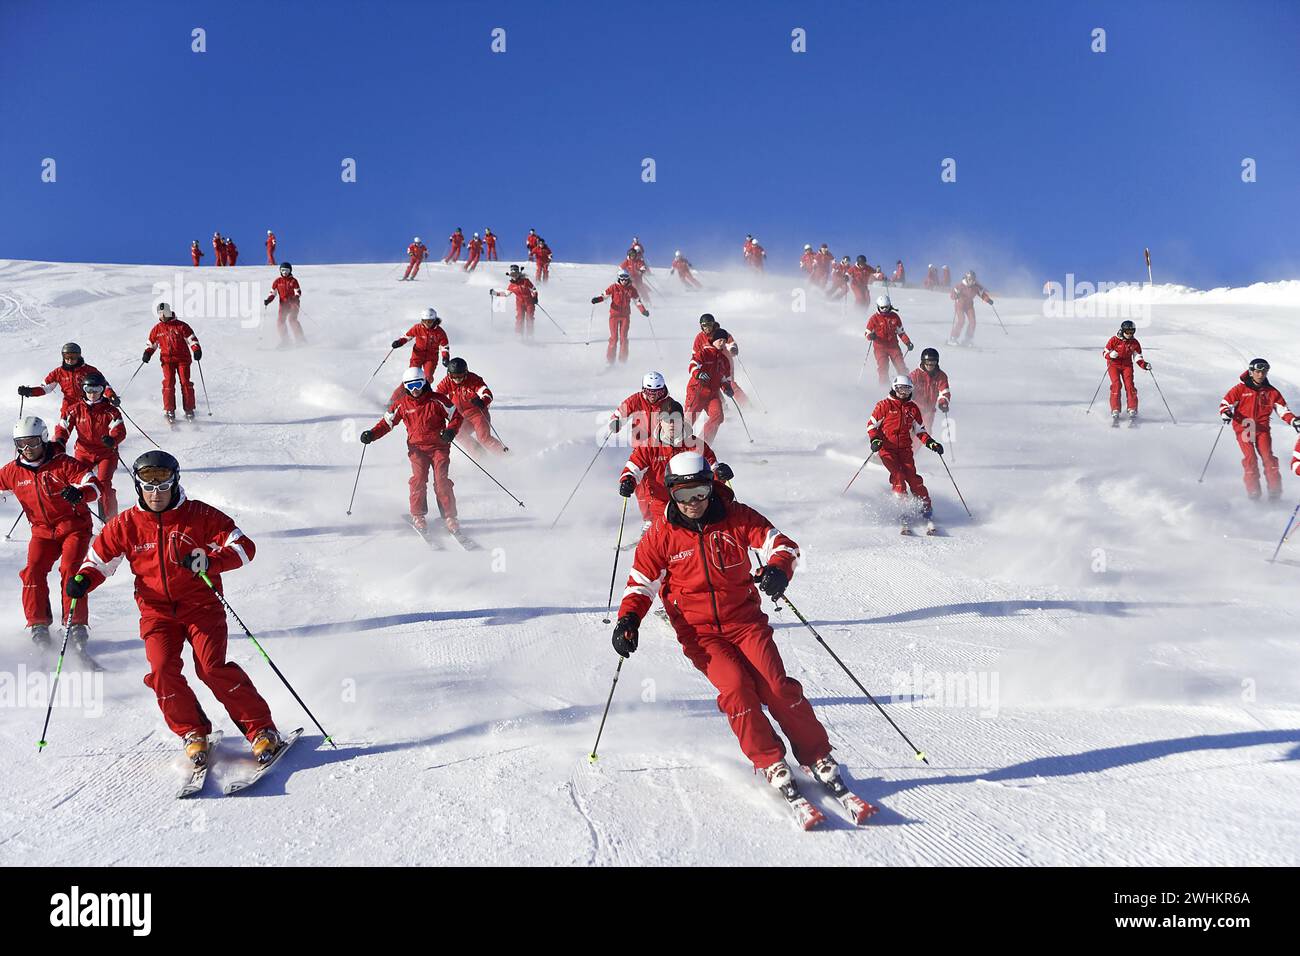 Skier in action, Ski school, Group in Austria Stock Photo